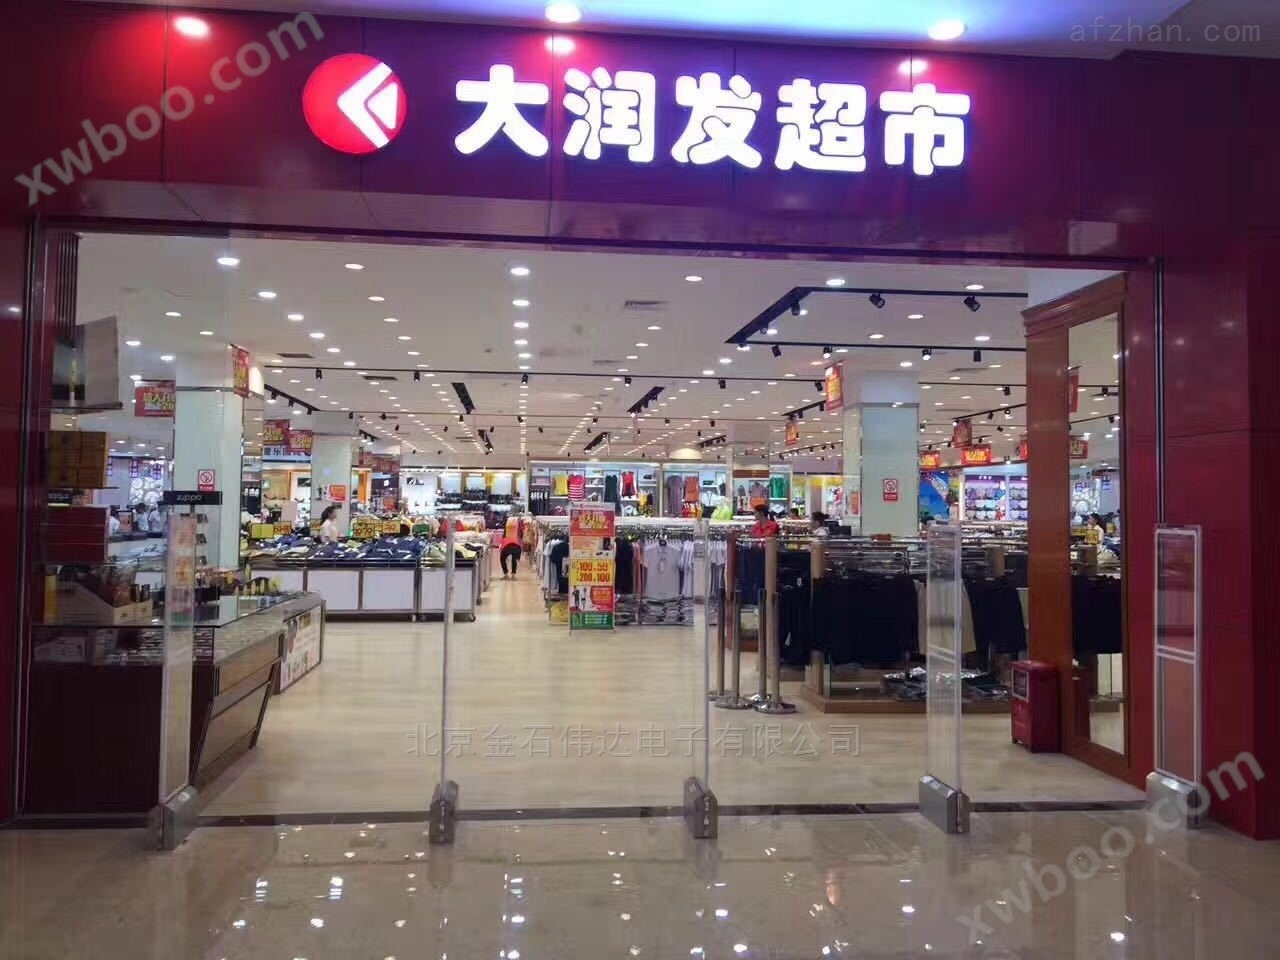 服装店超市防盗系统防盗设备北京金石伟达